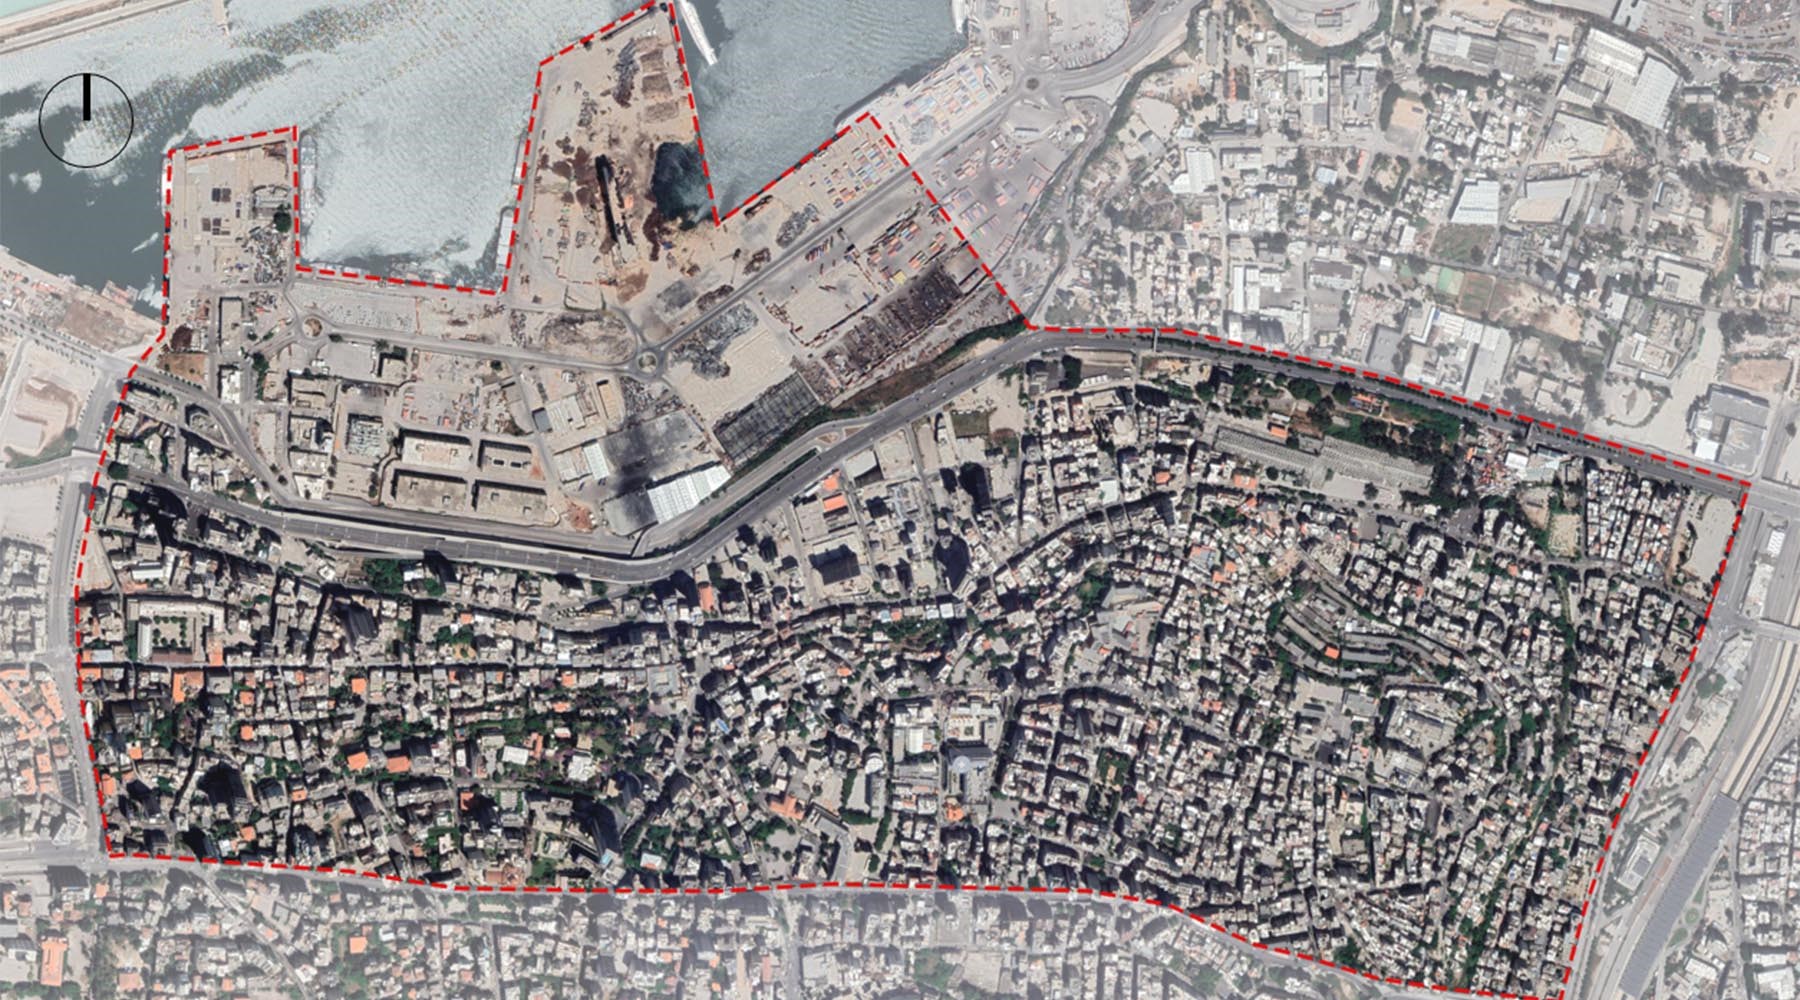 تحديد صفات التراث الثقافي في المناطق المتضررة من انفجار بيروت – ملخّص المشروع